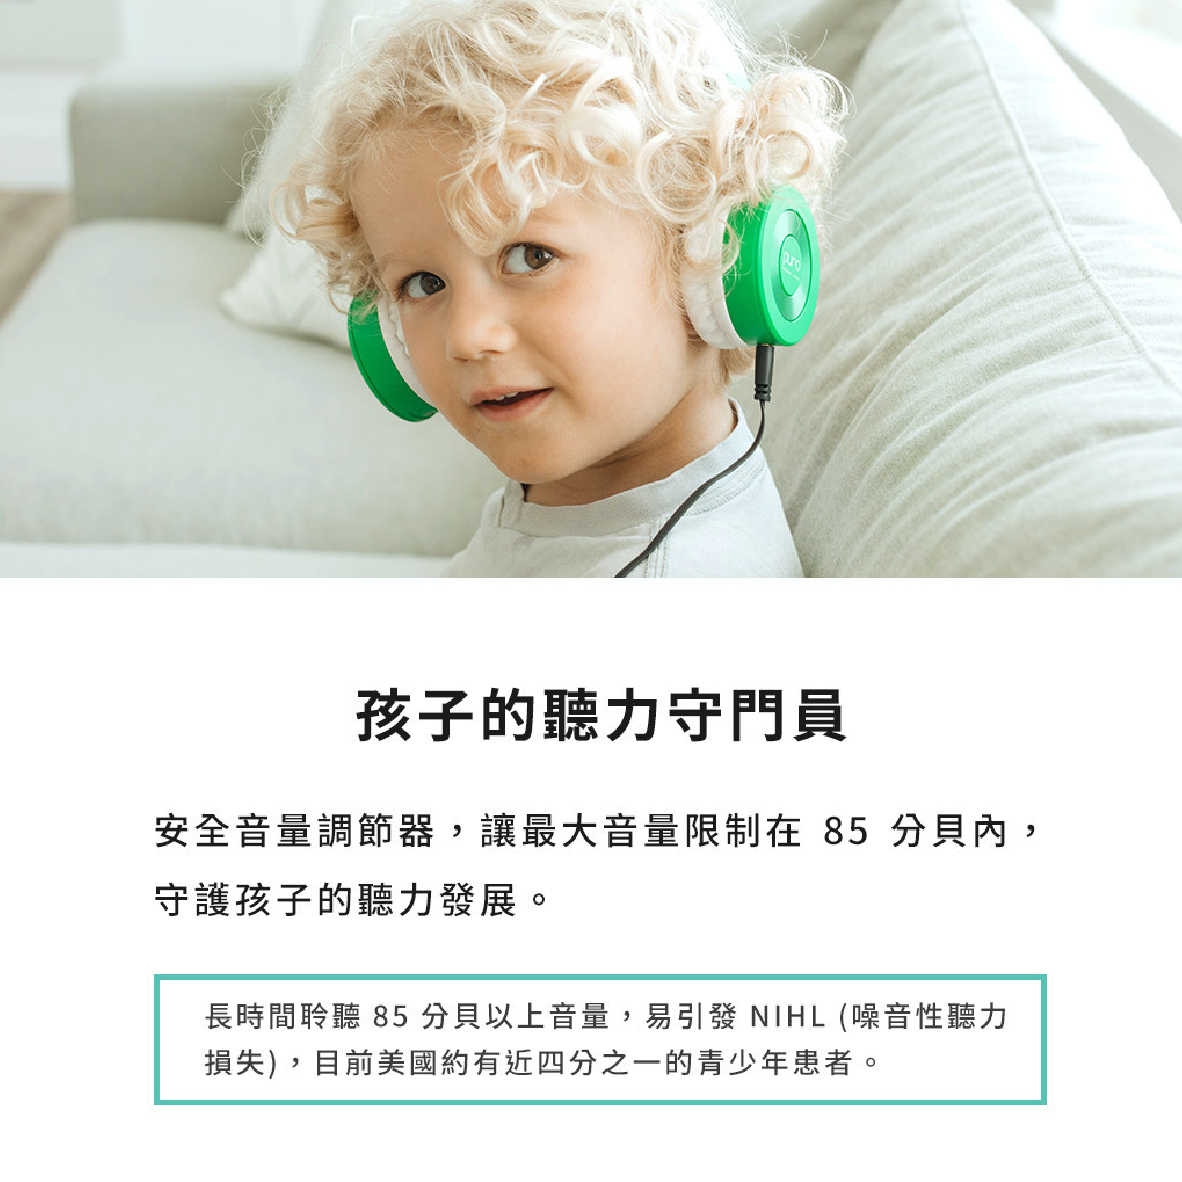 Puro JuniorJams 薄荷藍 內建麥克風 22hr續航 音量控制 兒童耳機 耳罩式耳機 | 金曲音響